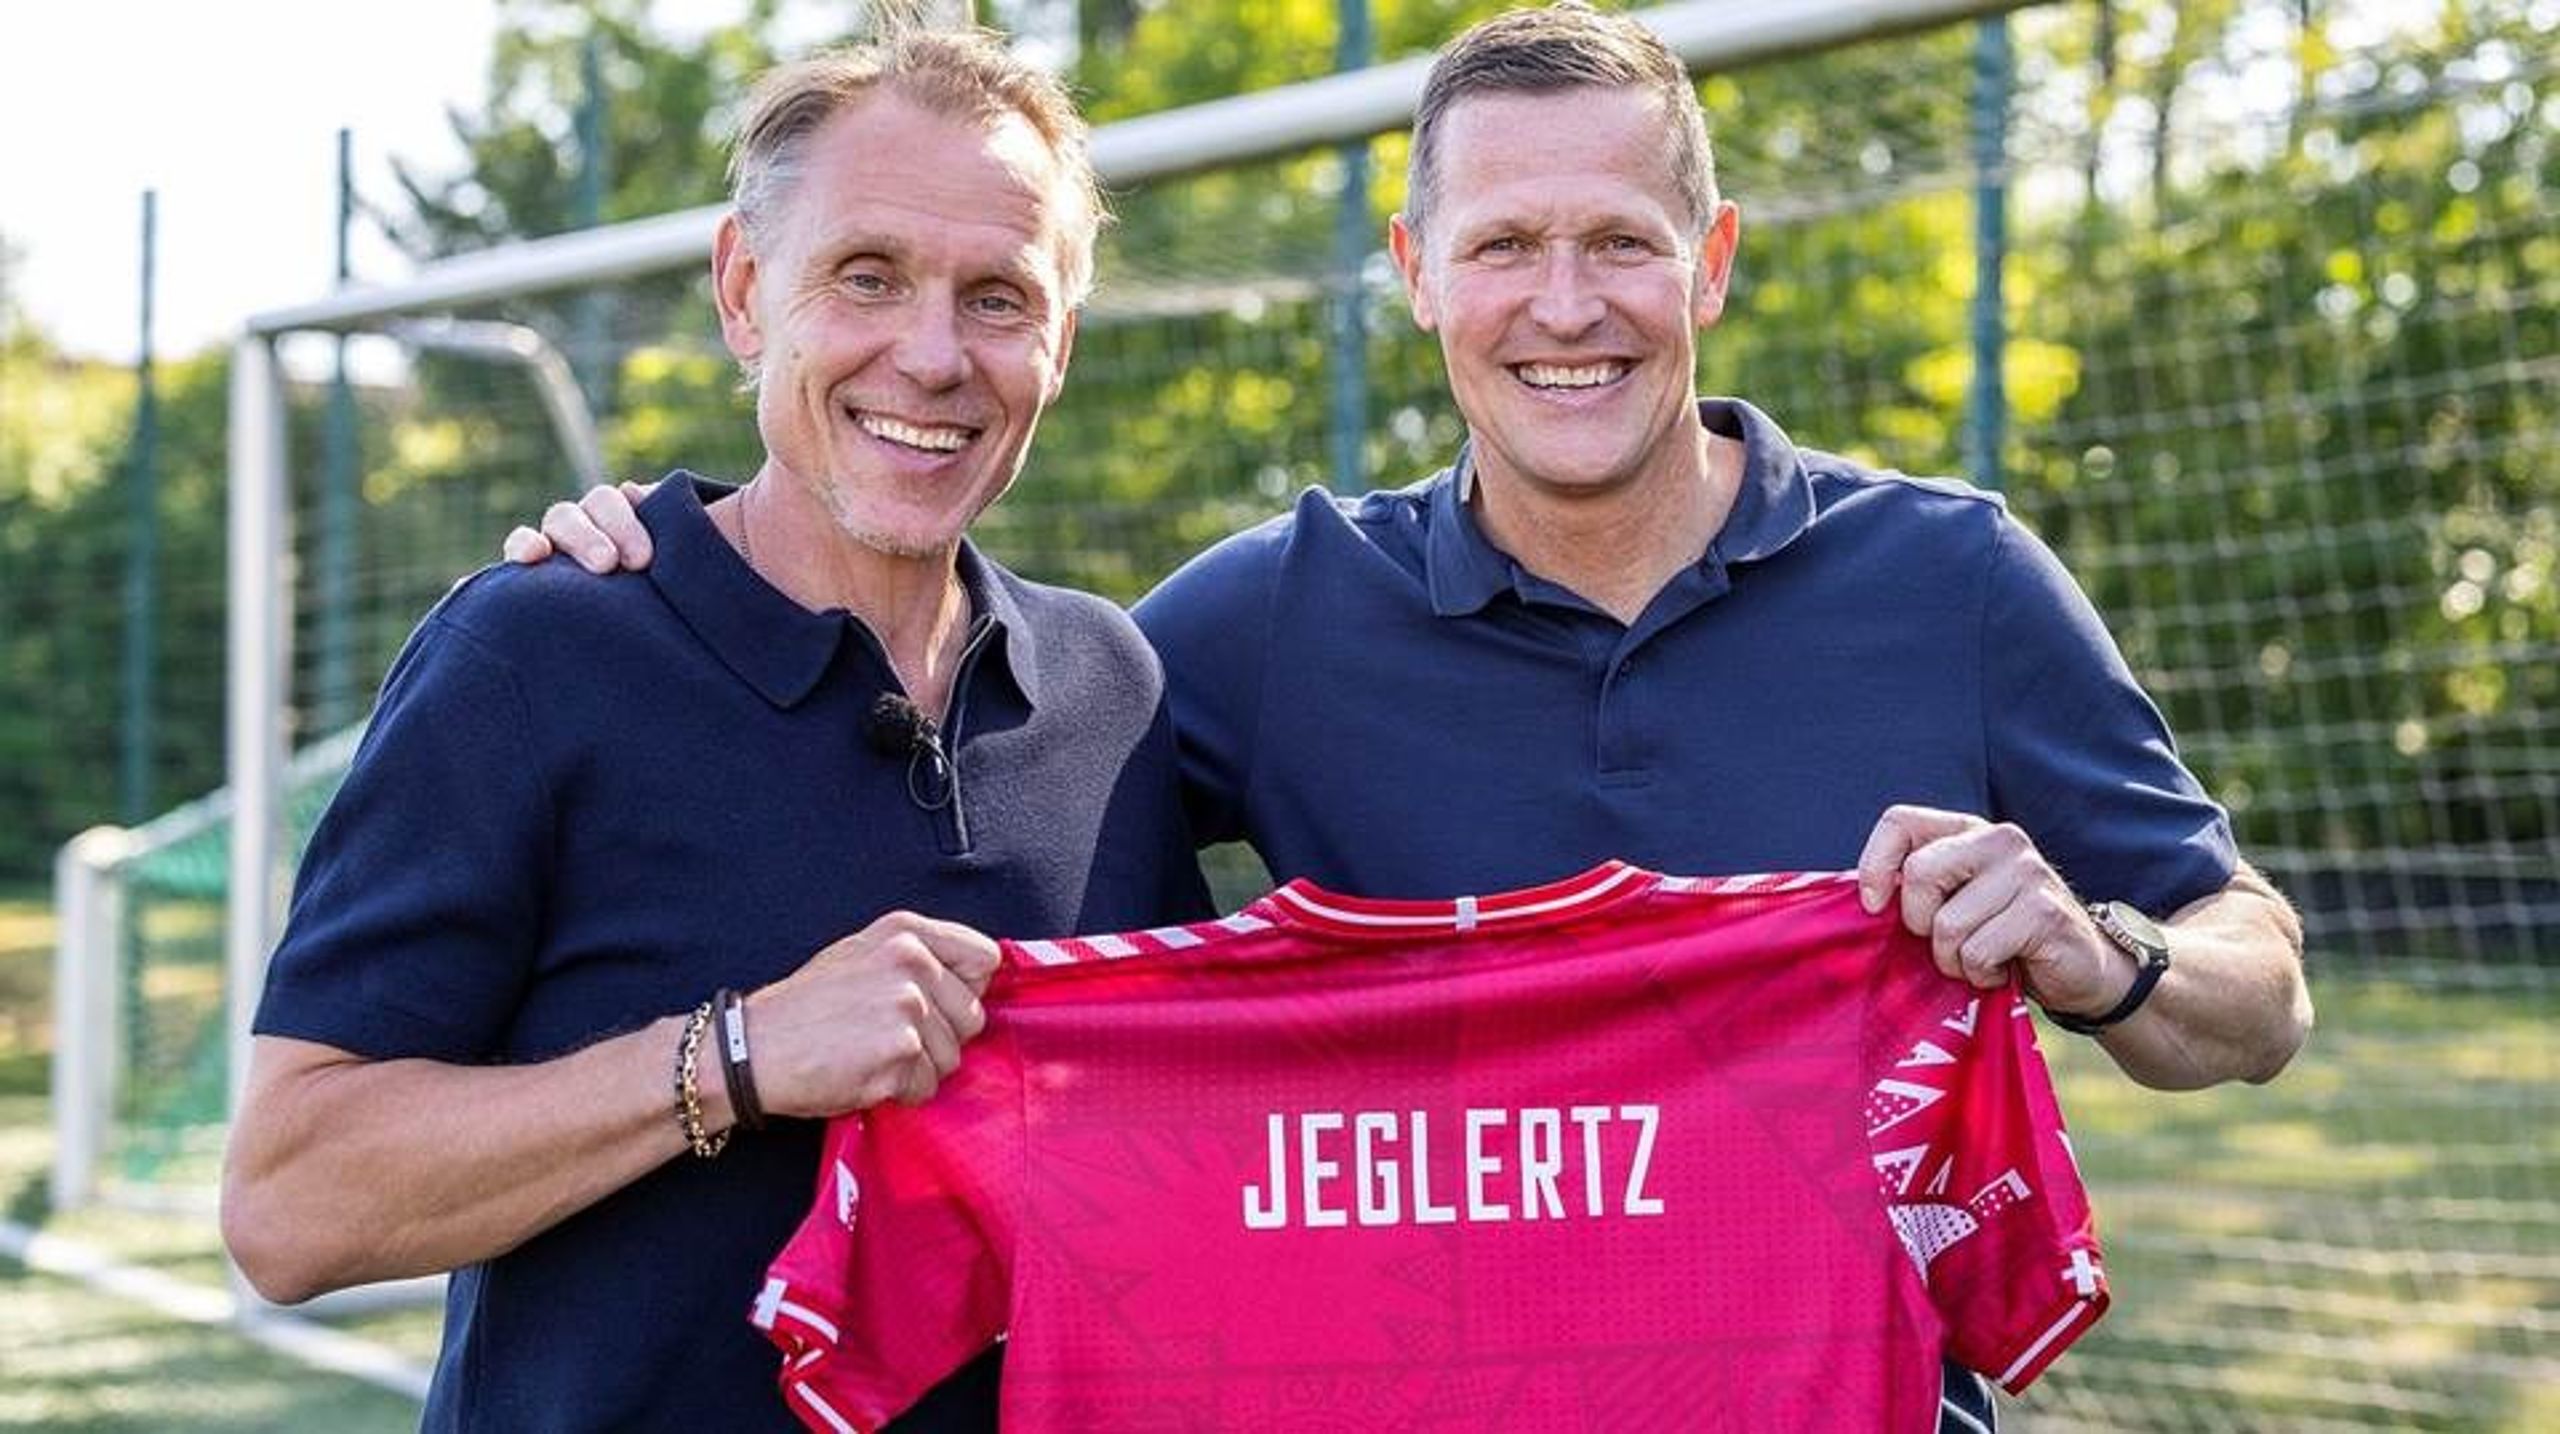 Andrée Jeglertz bliver ny landstræner for Kvindelandsholdet i fodbold.&nbsp;Han har tidligere arbejdet med&nbsp;Canada og Finlands kvindelandshold.